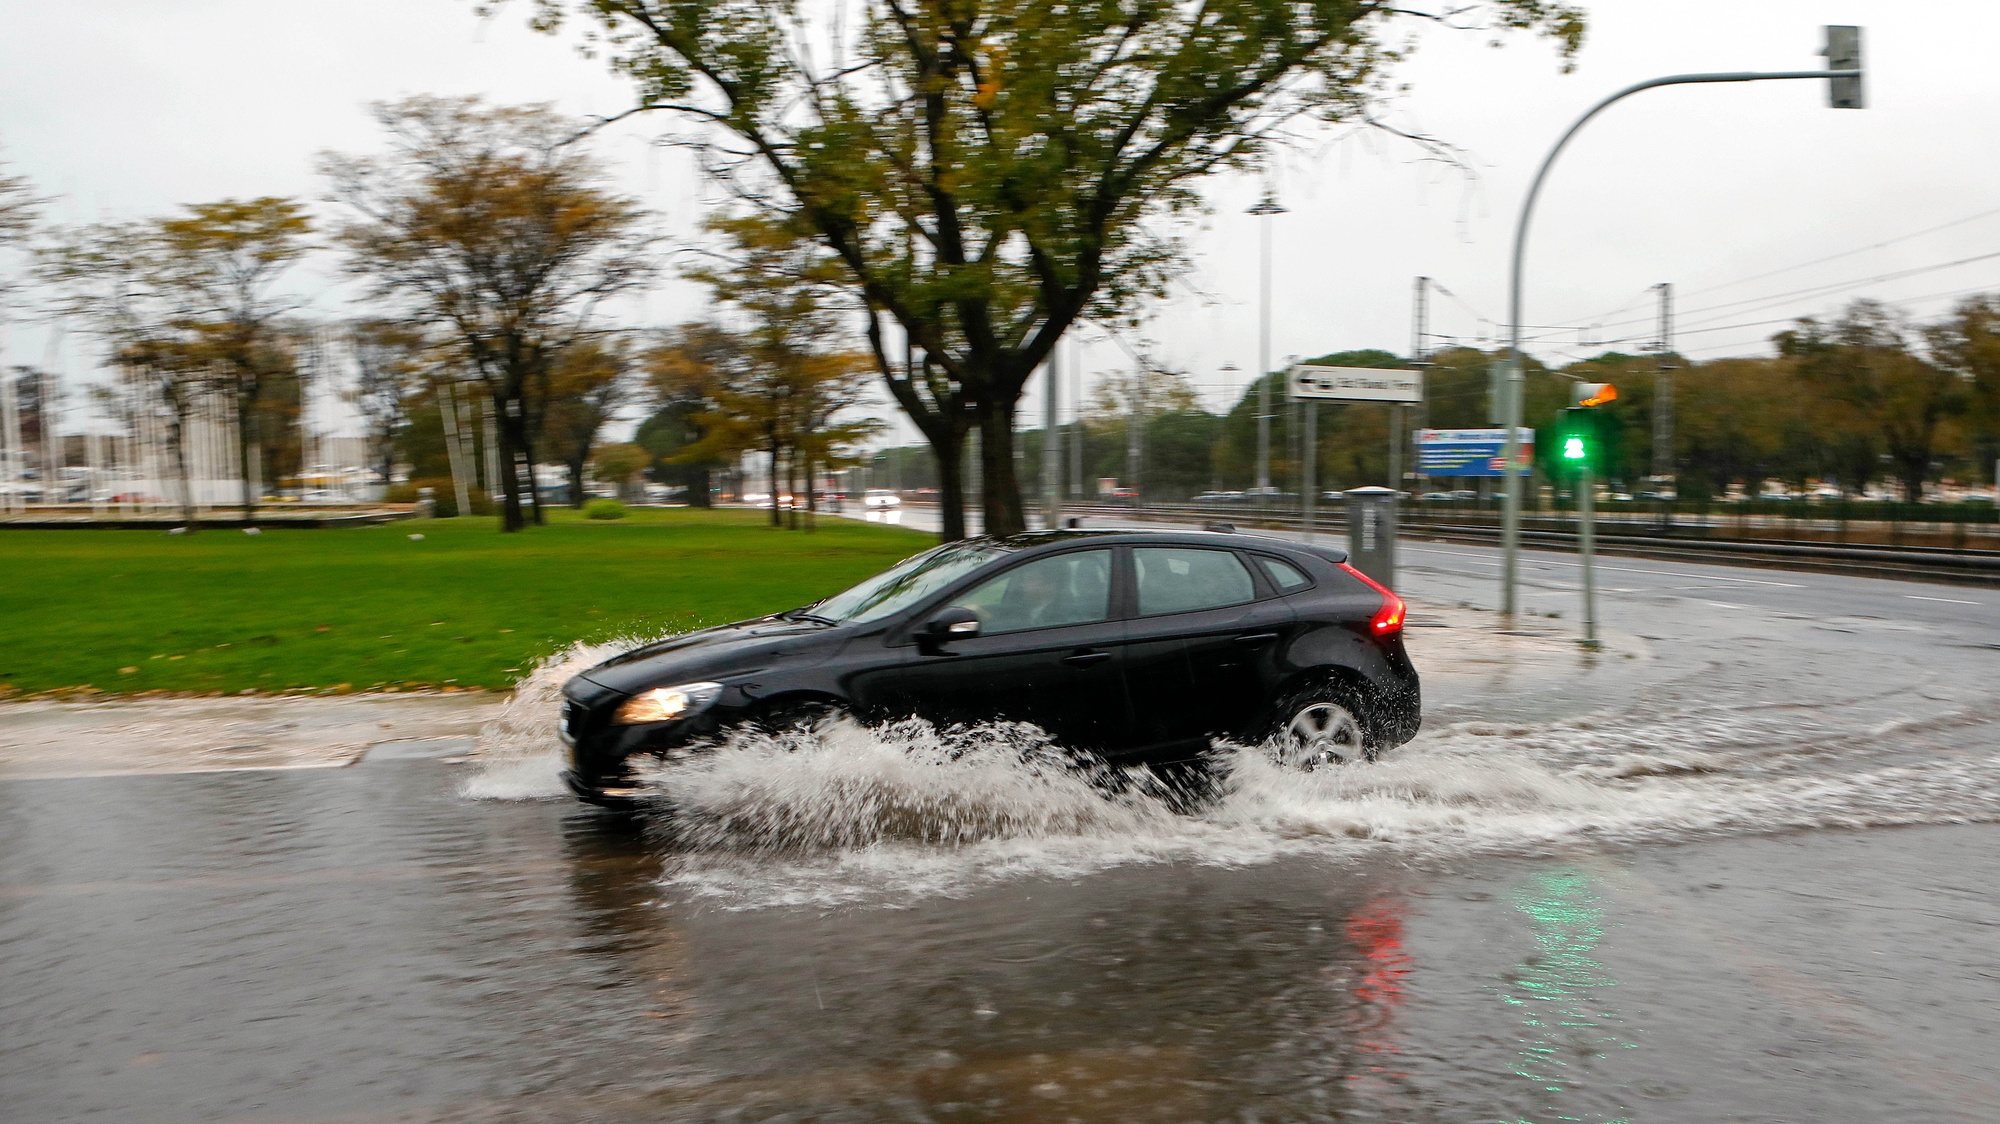 Um automóvel passa por uma estrada alagada pelas chuvas na zona de Belém, Lisboa, 11 de novembro de 2018. A chuva intensa que se abateu na manhã deste domingo sobre o distrito de Lisboa está a provocar inundações em várias localidades. ANTÓNIO PEDRO SANTOS/LUSA